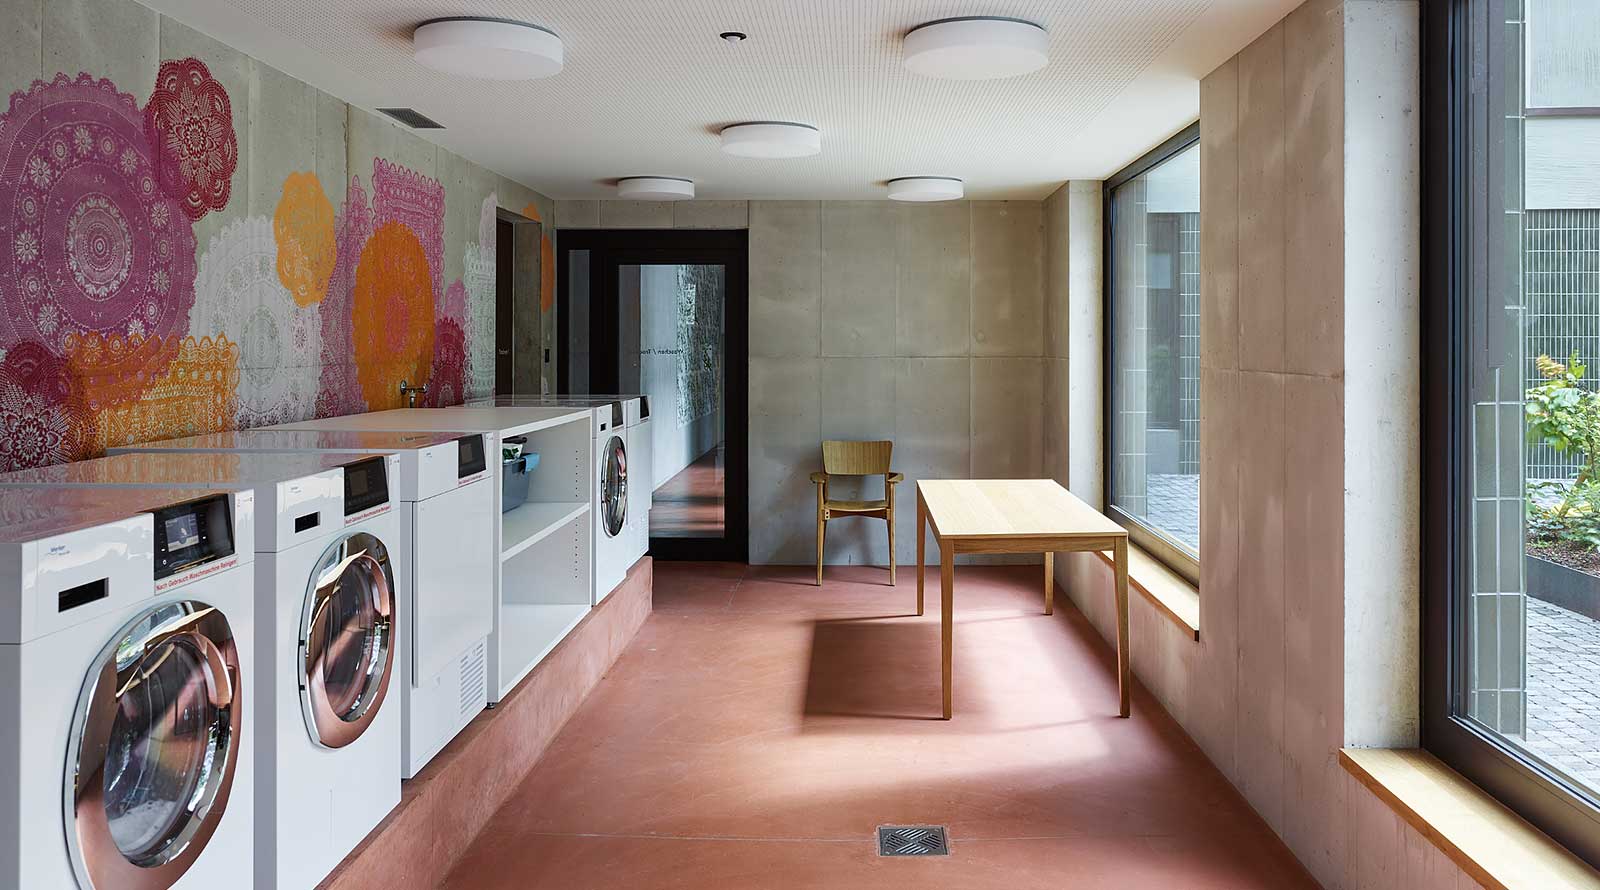 Die offene Waschküche in der Begegnungszone im Erdgeschoss lädt zu spontanen Gesprächen ein. Foto: Georg Aerni.